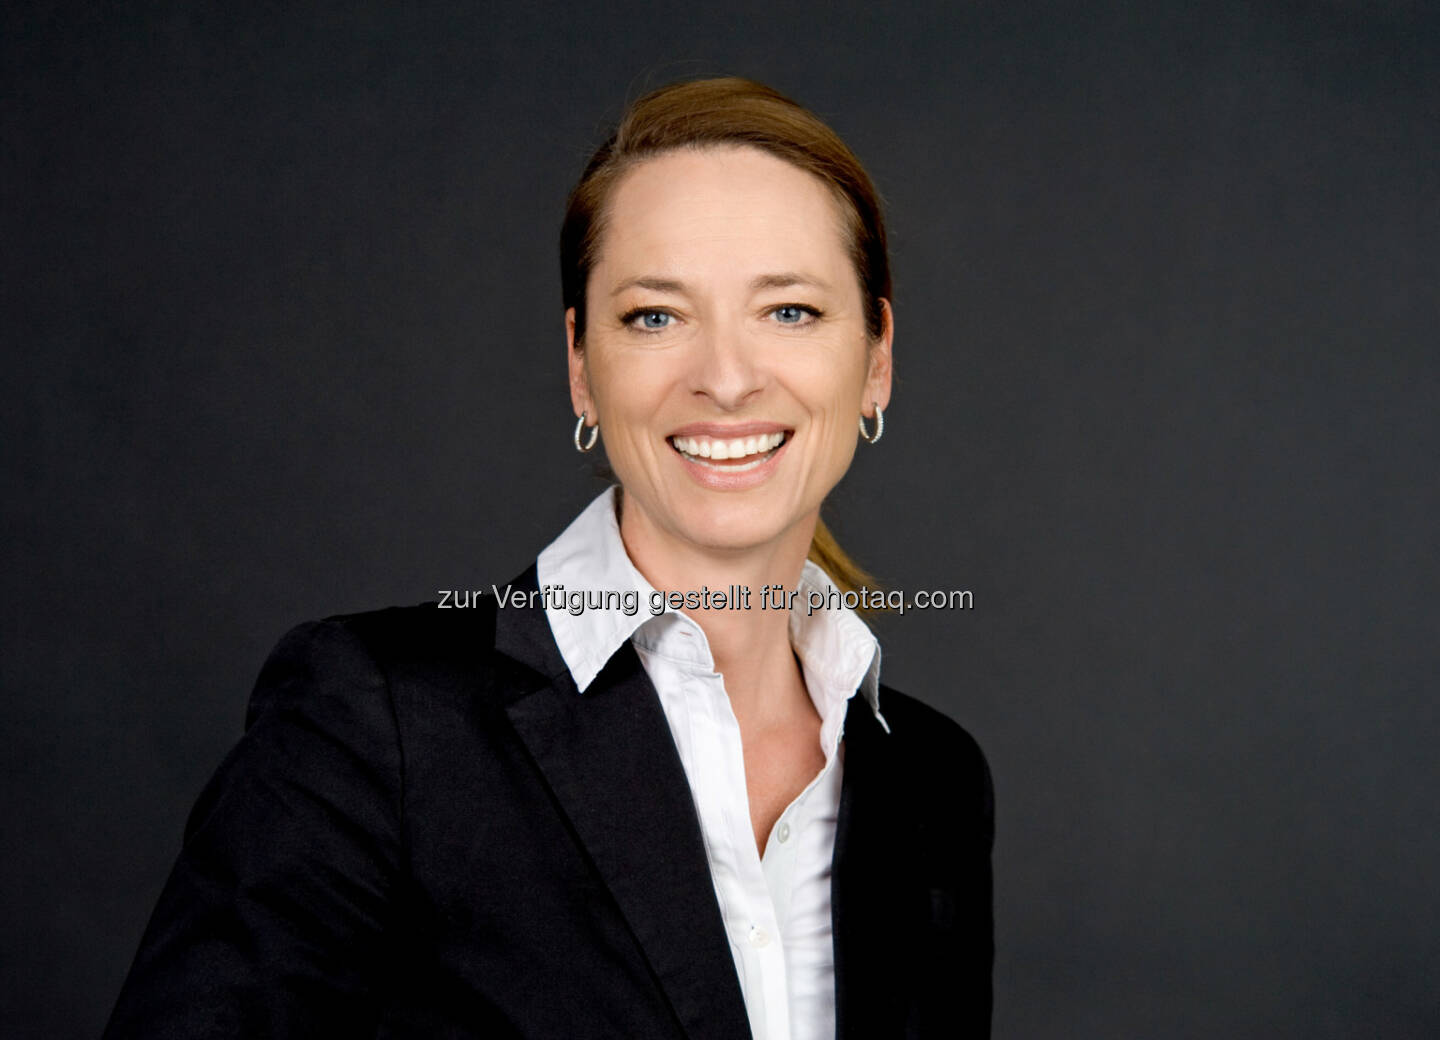 Xenia Daum wird Geschäftsführerin der styria digital one - styria digital one GmbH: styria digital one baut ihr Führungsteam aus (Fotocredit: sd one/Wilke)